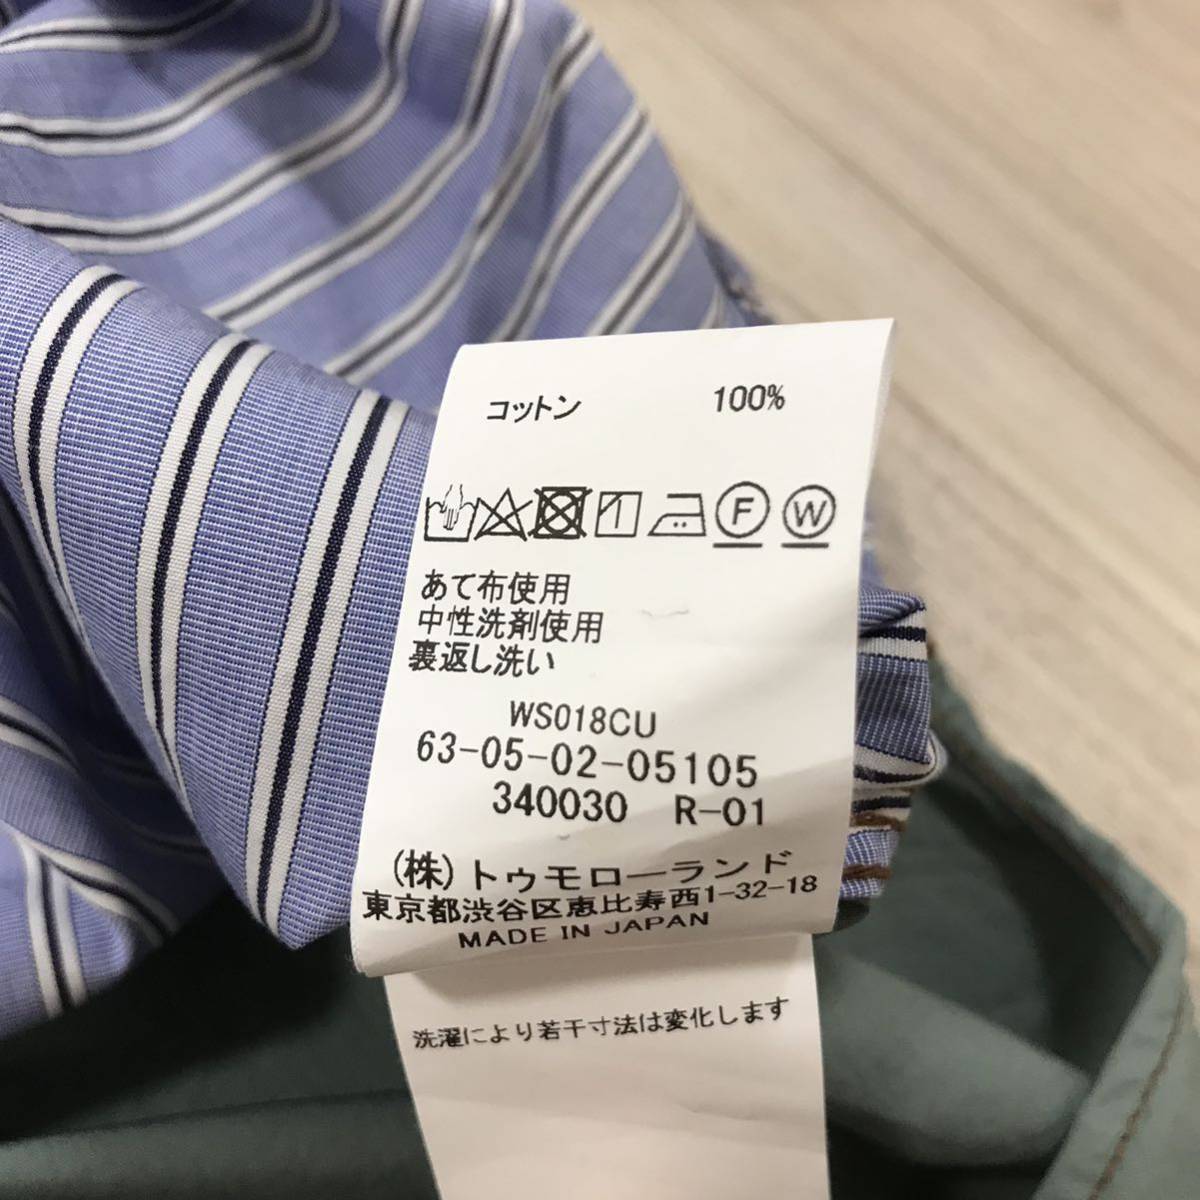 TOMORROWLAND THOMAS MASON MADE IN JAPAN Thomas meison полоса комбинированный рубашка work shirt большой сотрудничество специальный заказ милитари жакет 